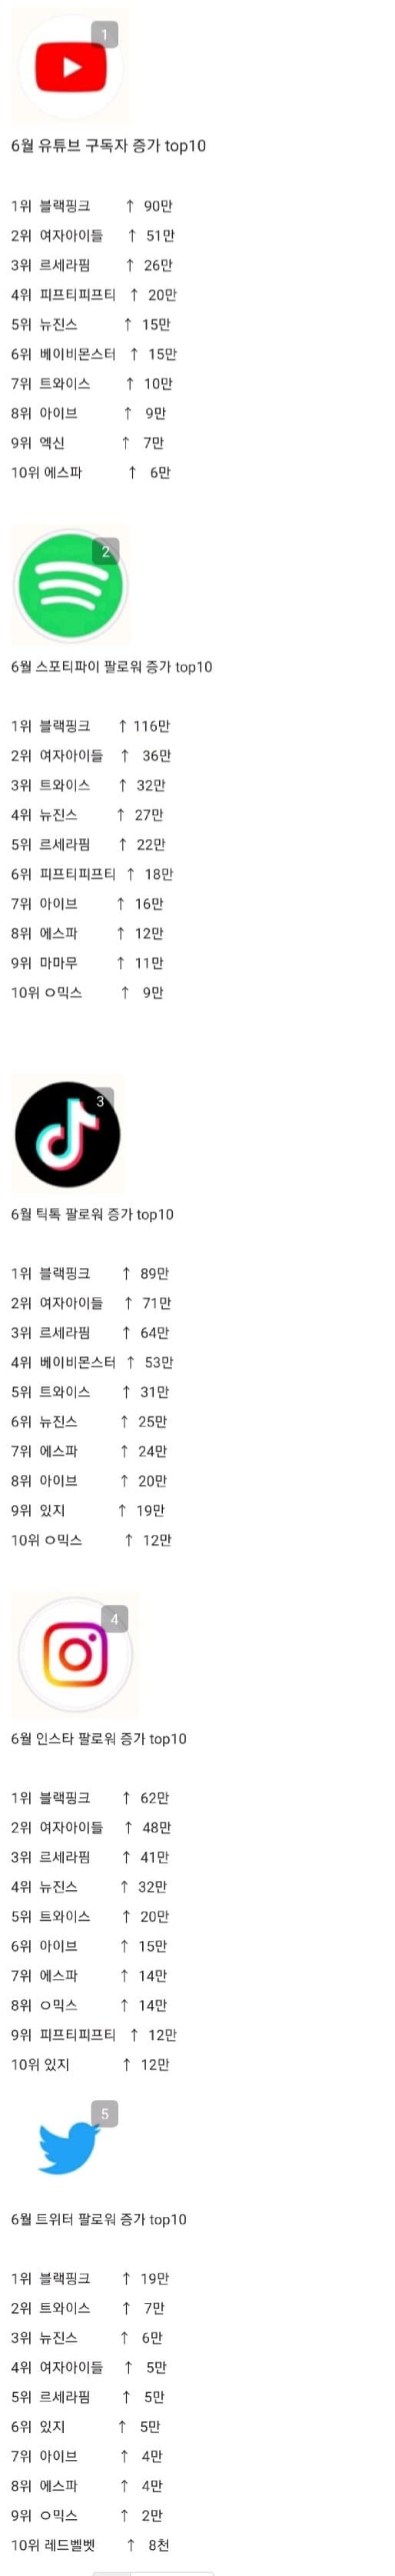 [정보/소식] 6월 걸그룹 유투브 스포티 틱톡 인스타 트위터 증가량 top10 | 인스티즈